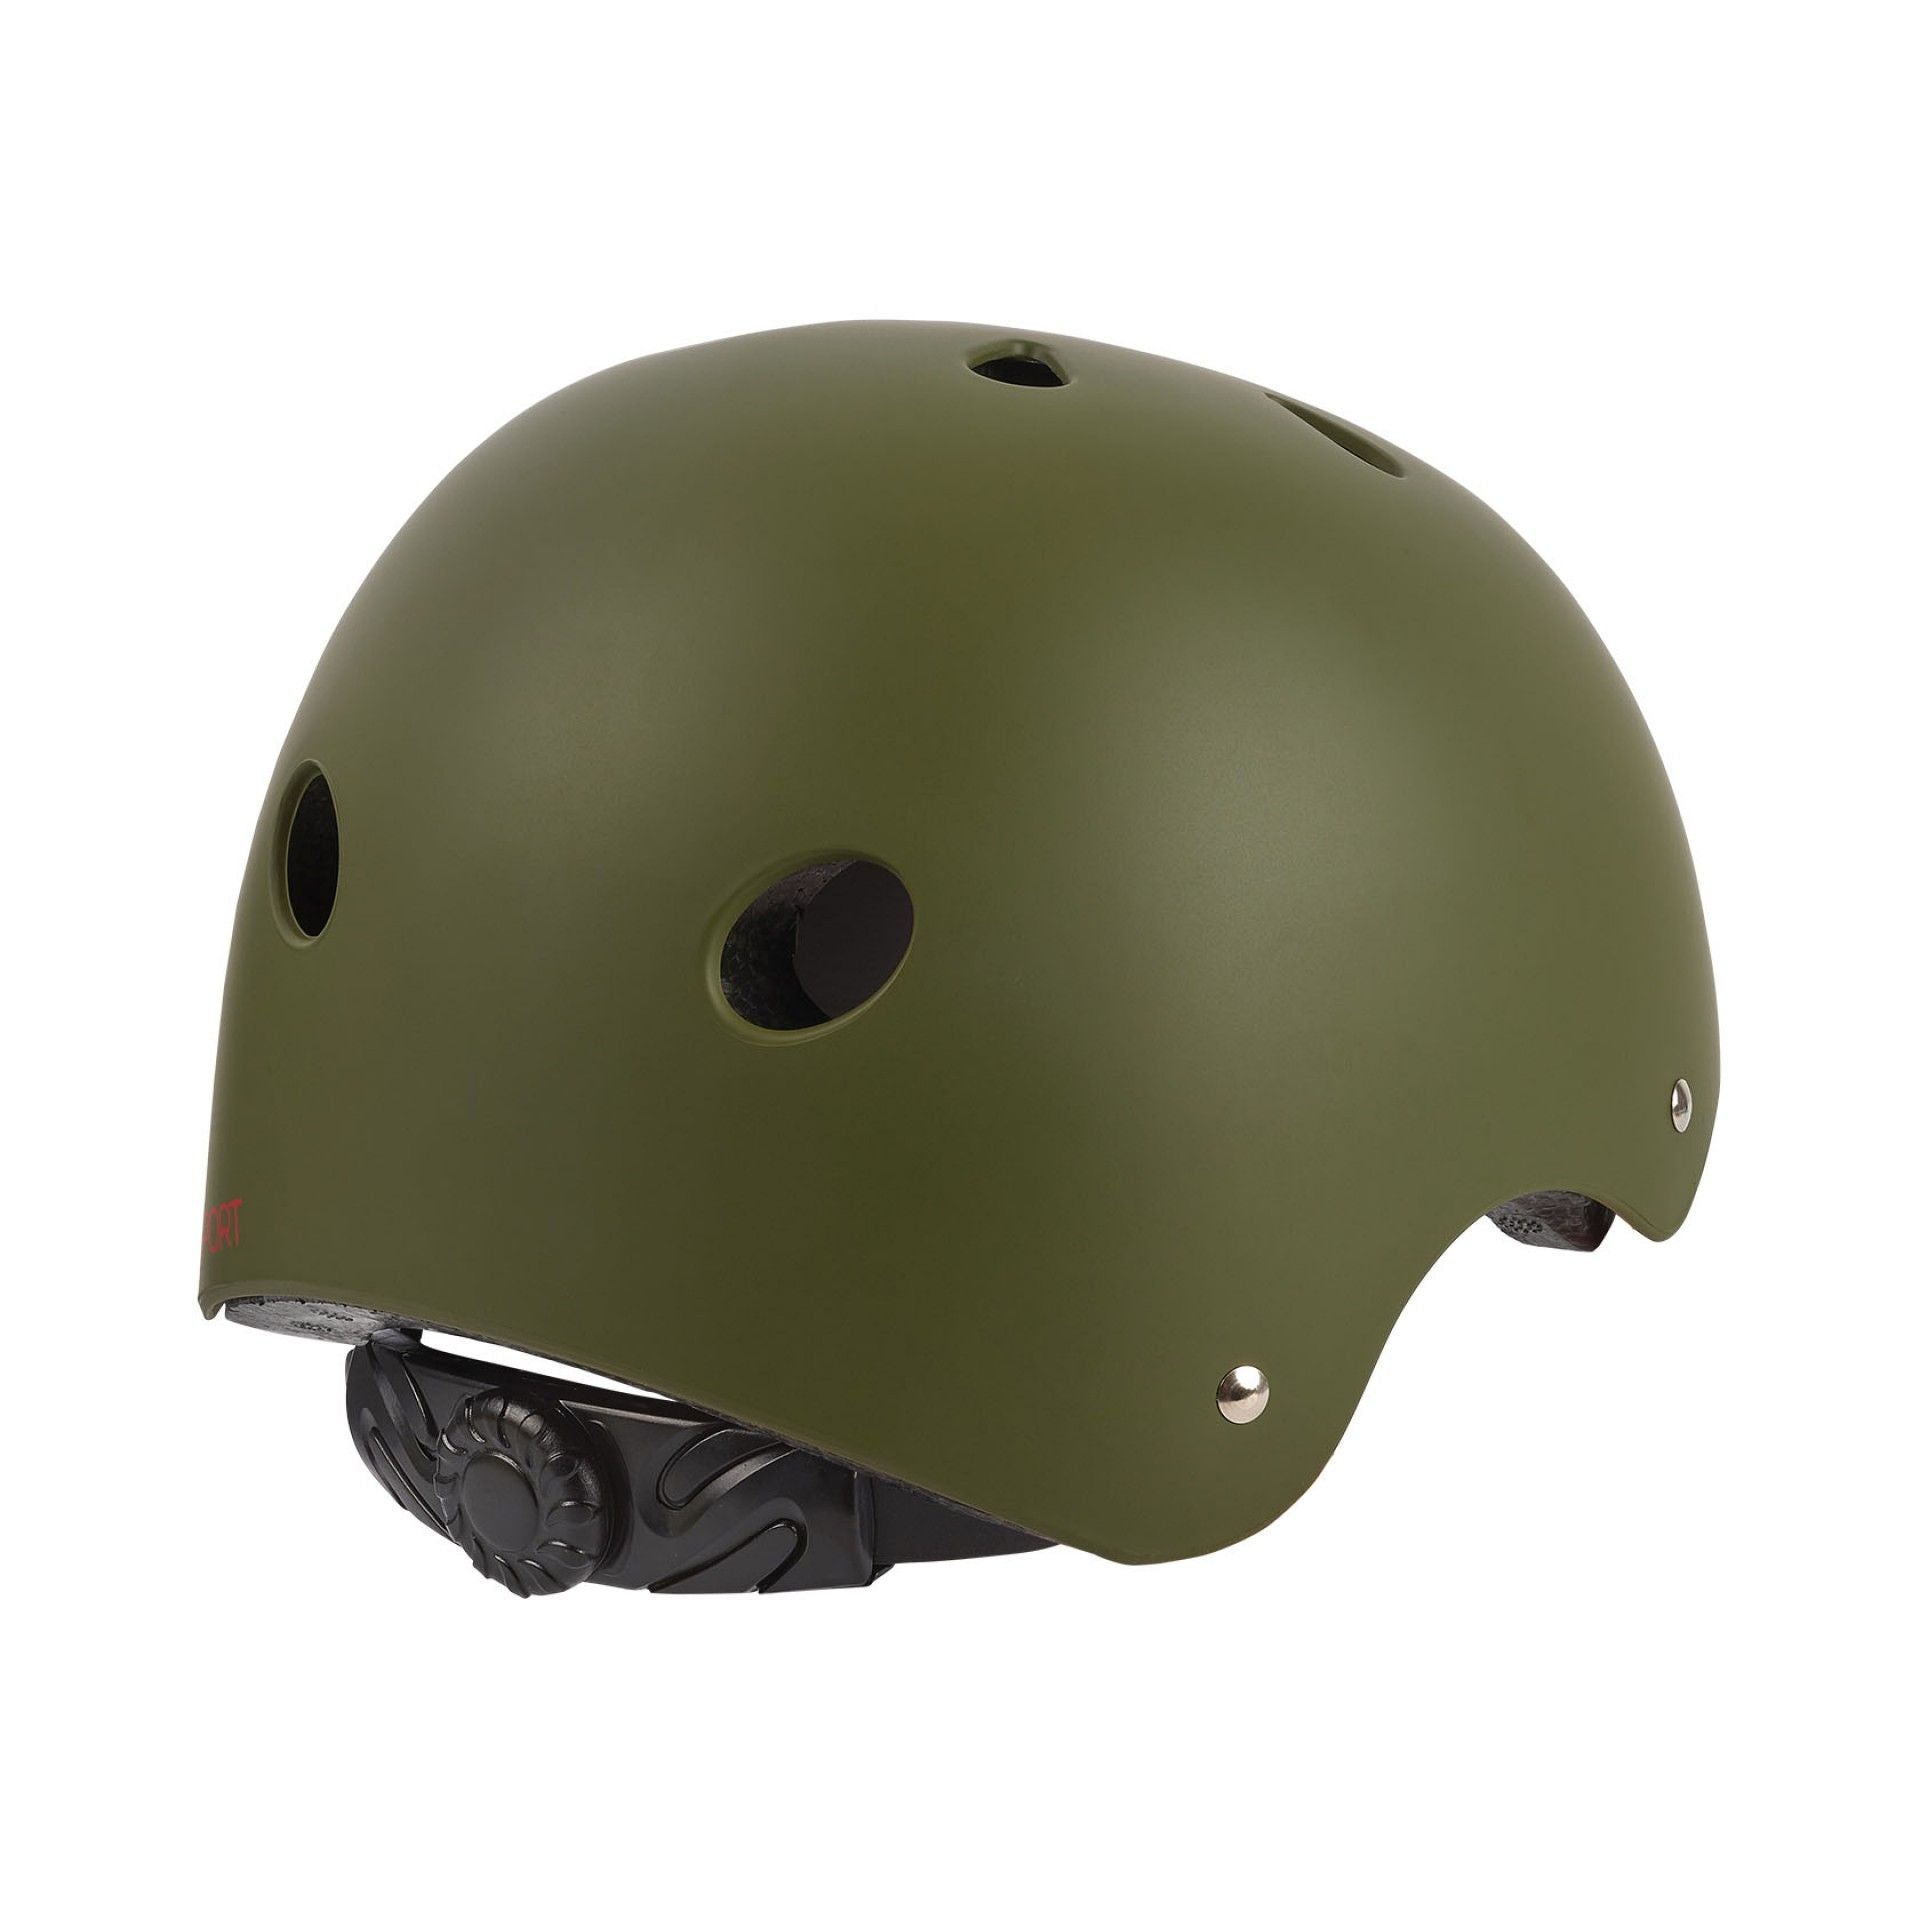 Polisport - Urban Radical Helmet